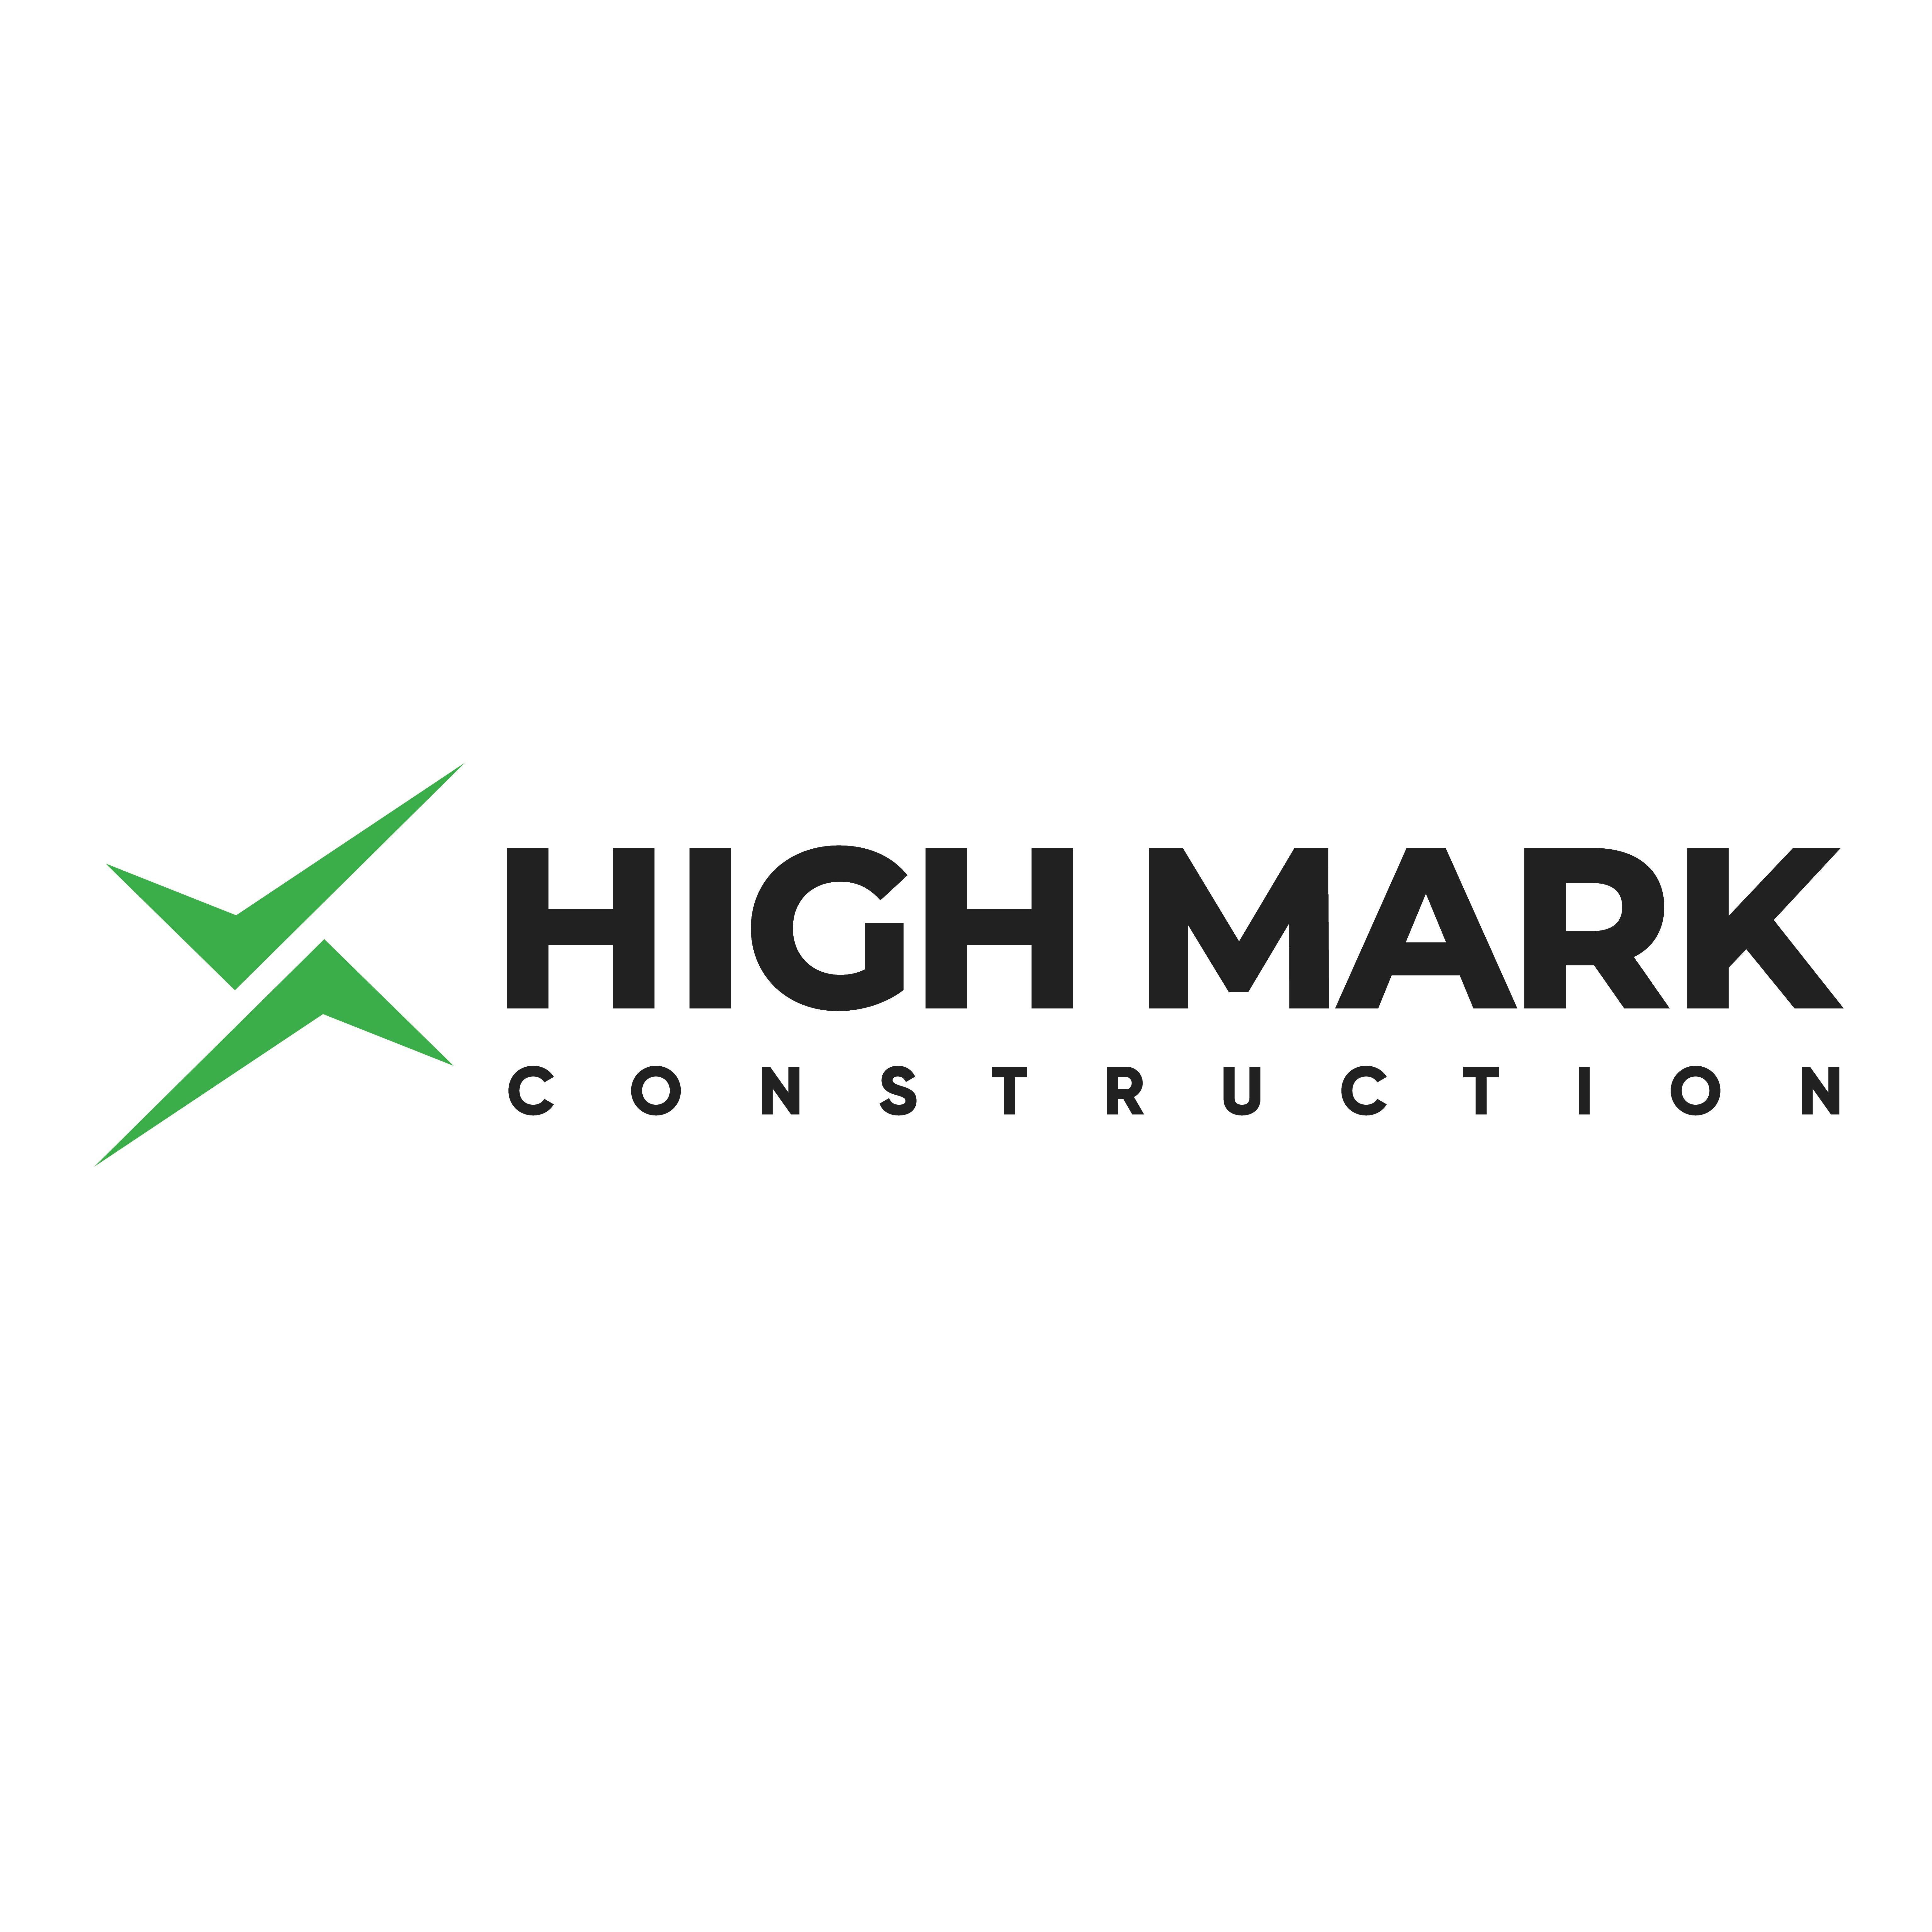 High Mark Construction - York, PA 17403 - (717)344-5480 | ShowMeLocal.com